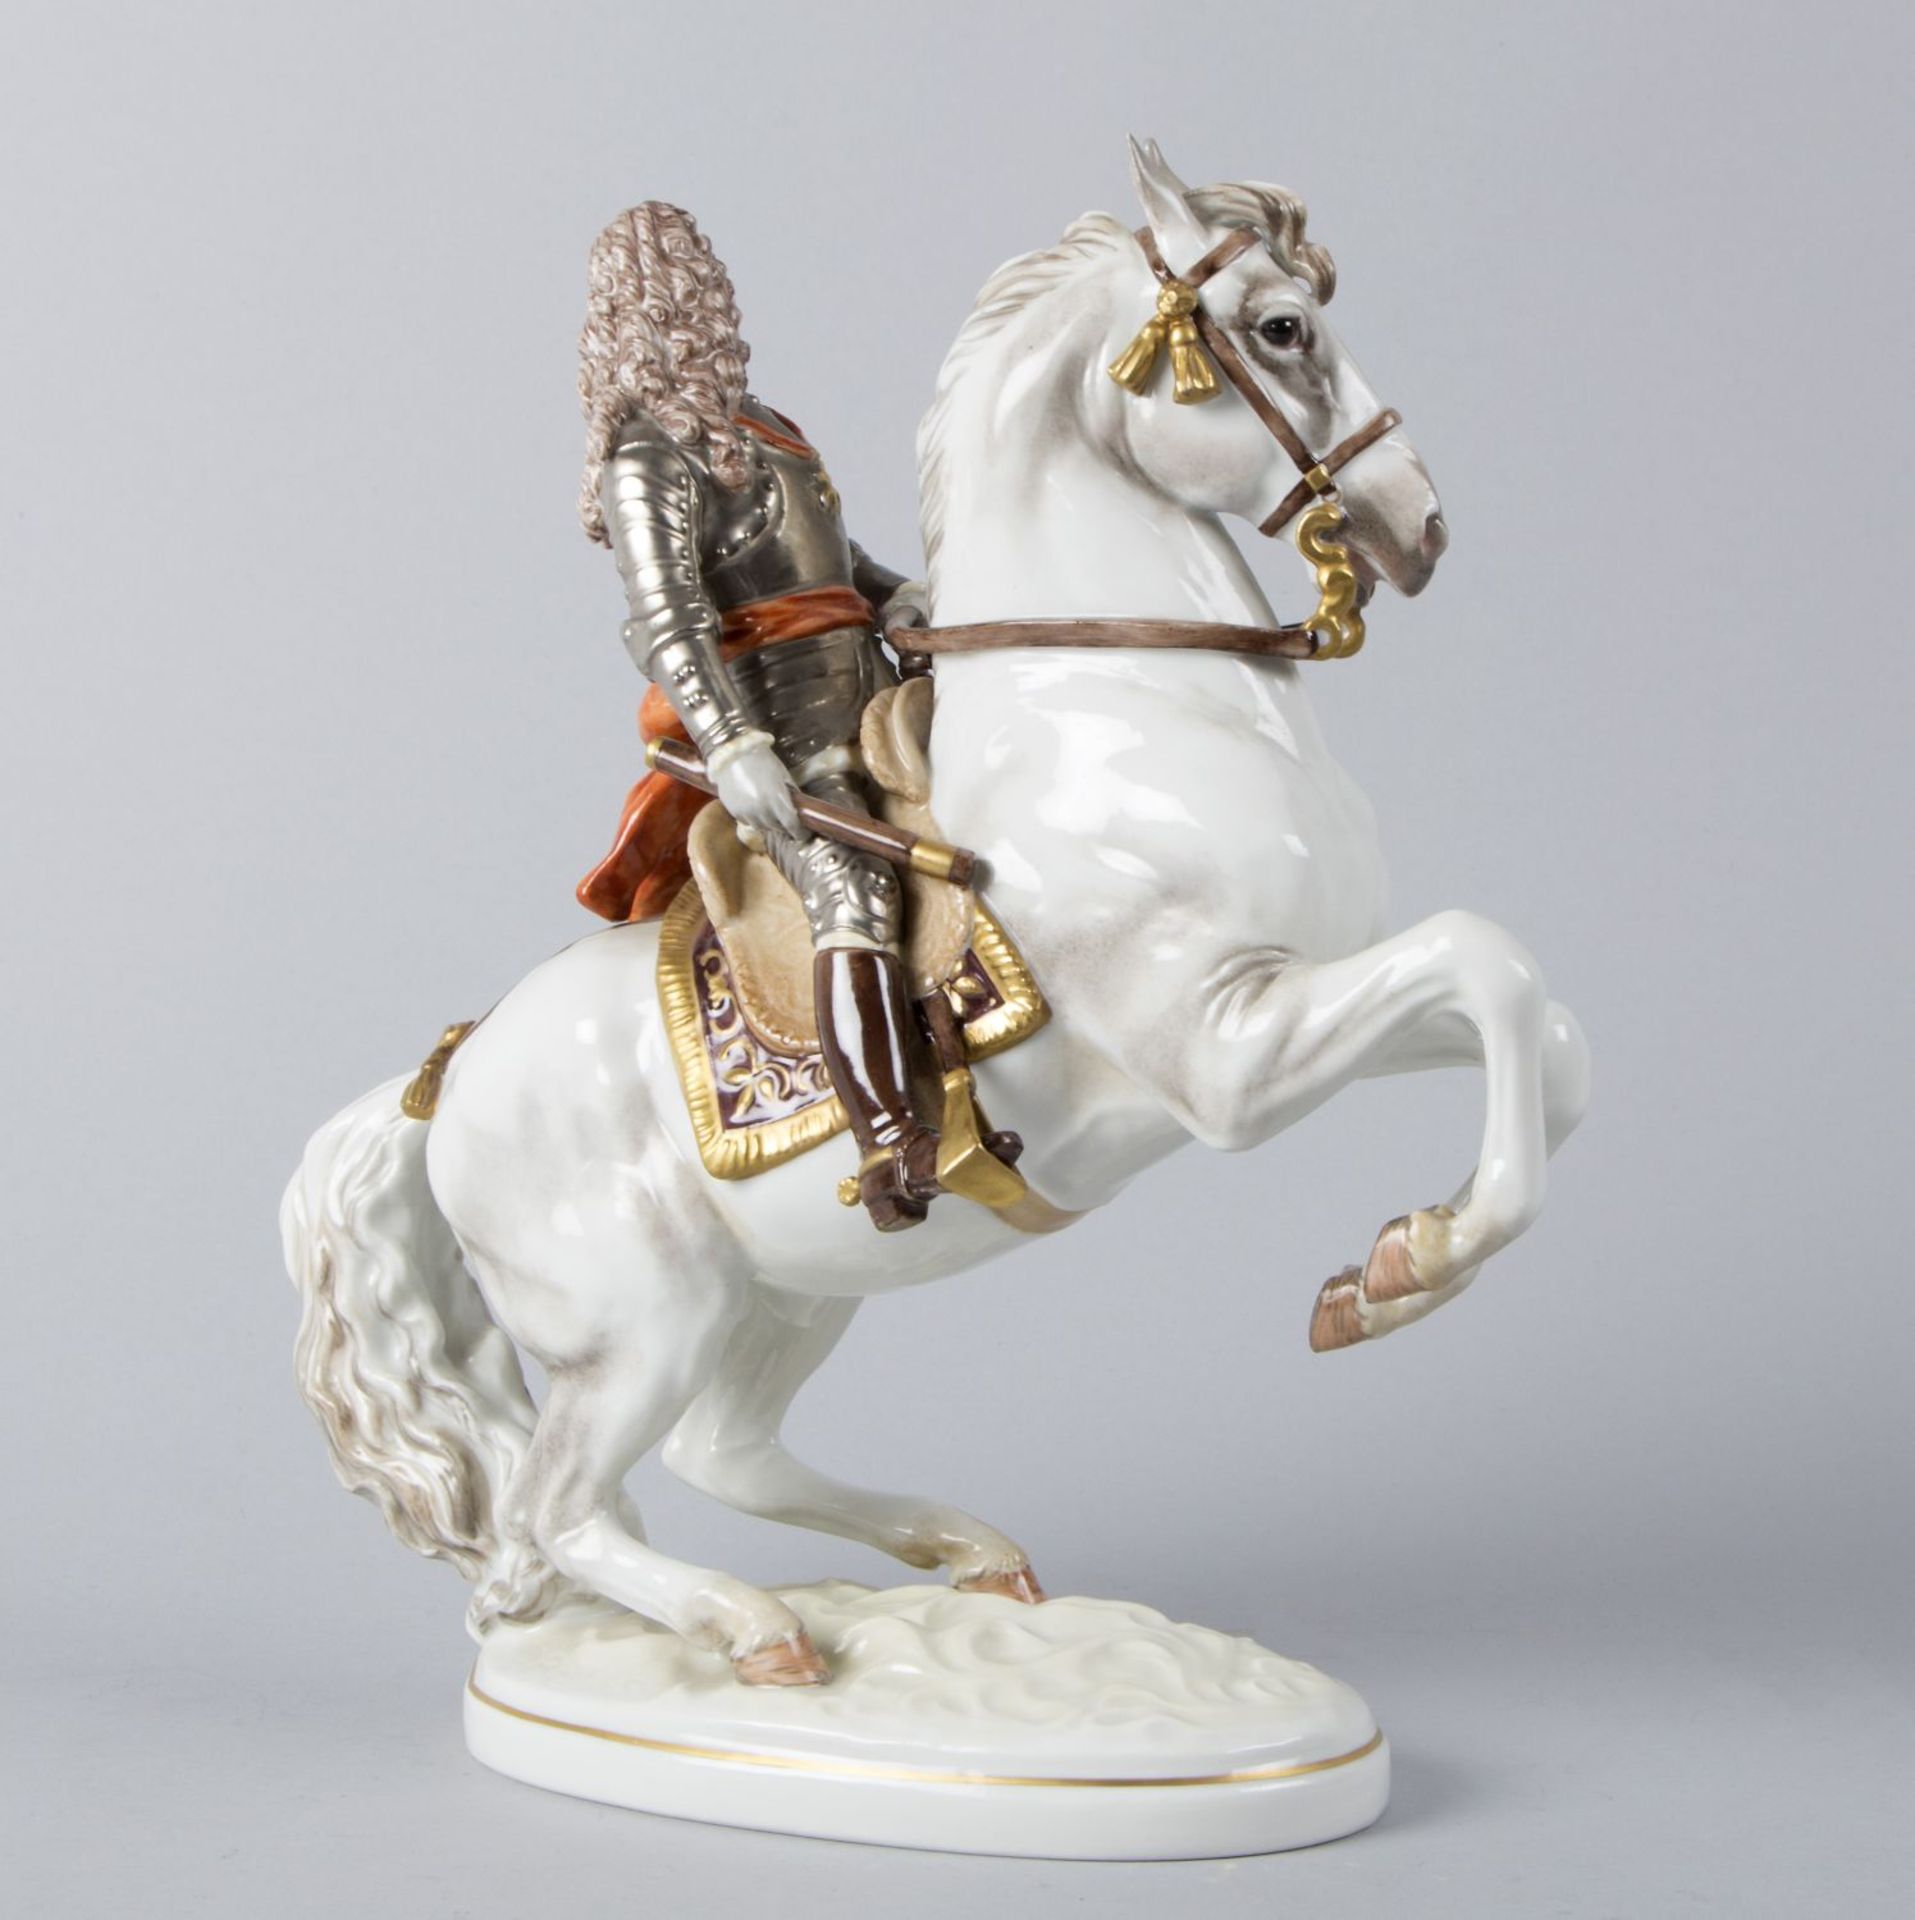 Prinz Eugen von Savoyen-Carignan zu PferdPolychrome Bemalung. Goldstaffage. Nach einem - Bild 3 aus 3